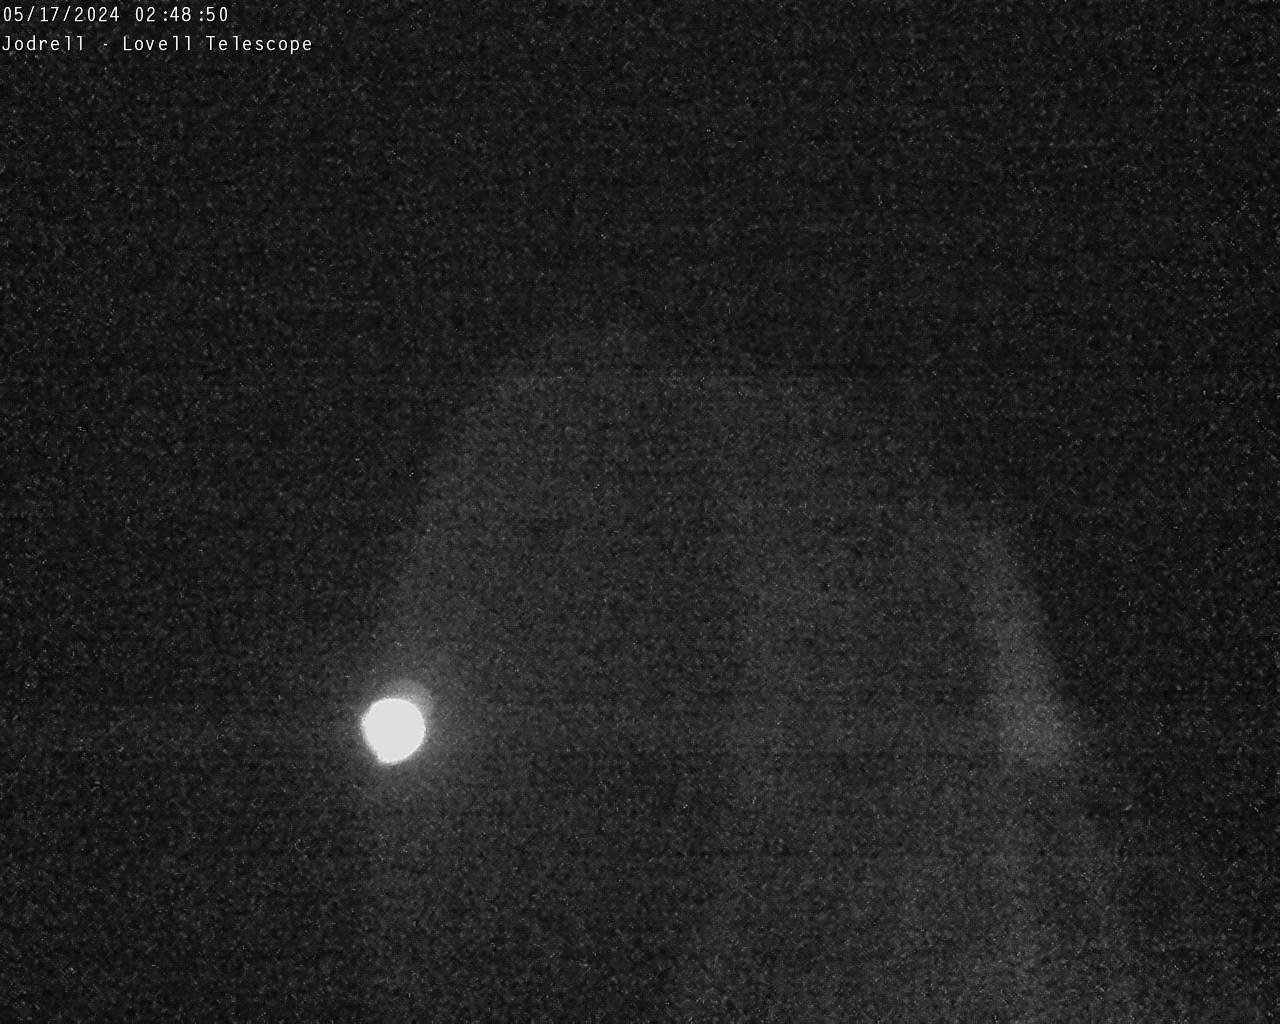 Observatorio Jodrell Bank Sáb. 02:49